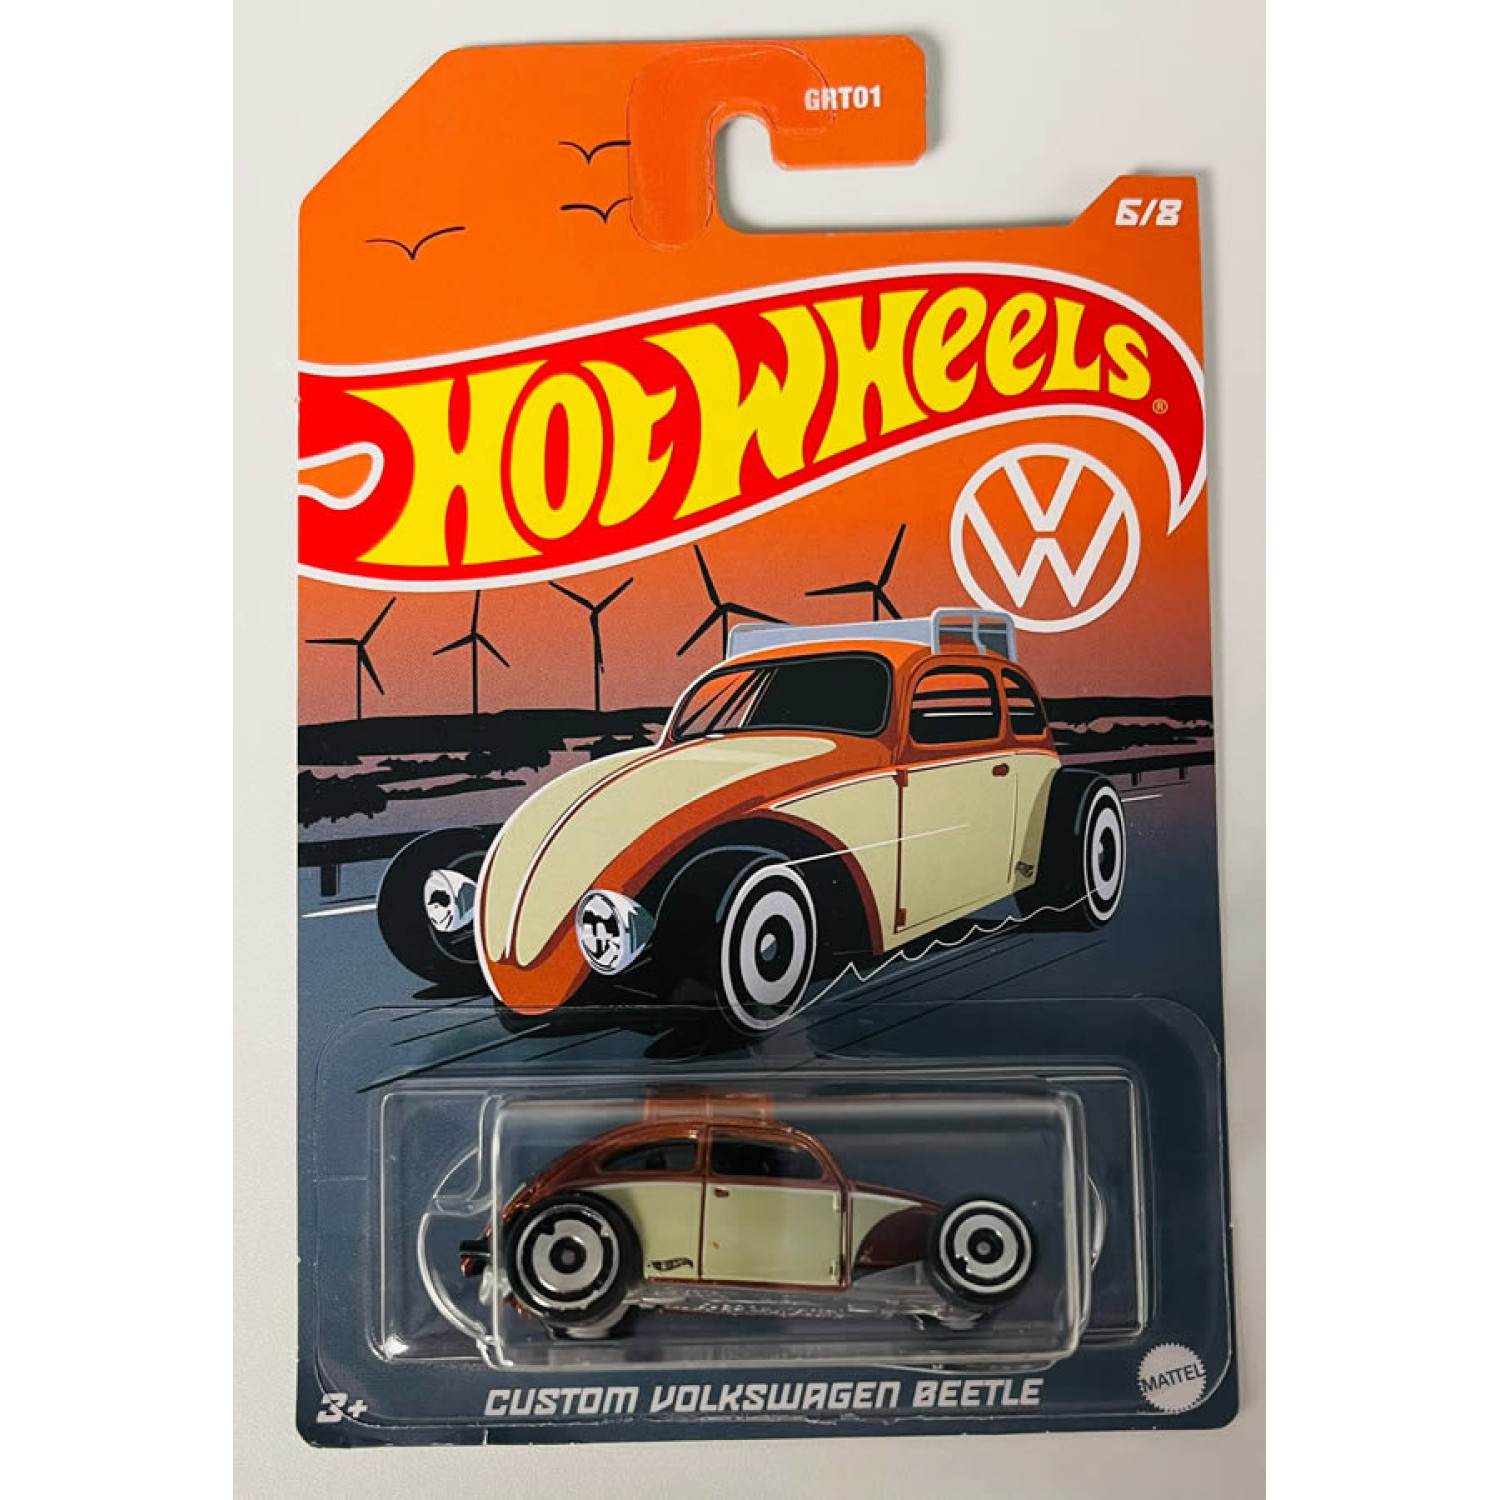 Custom Volkswagen Beetle 6/8